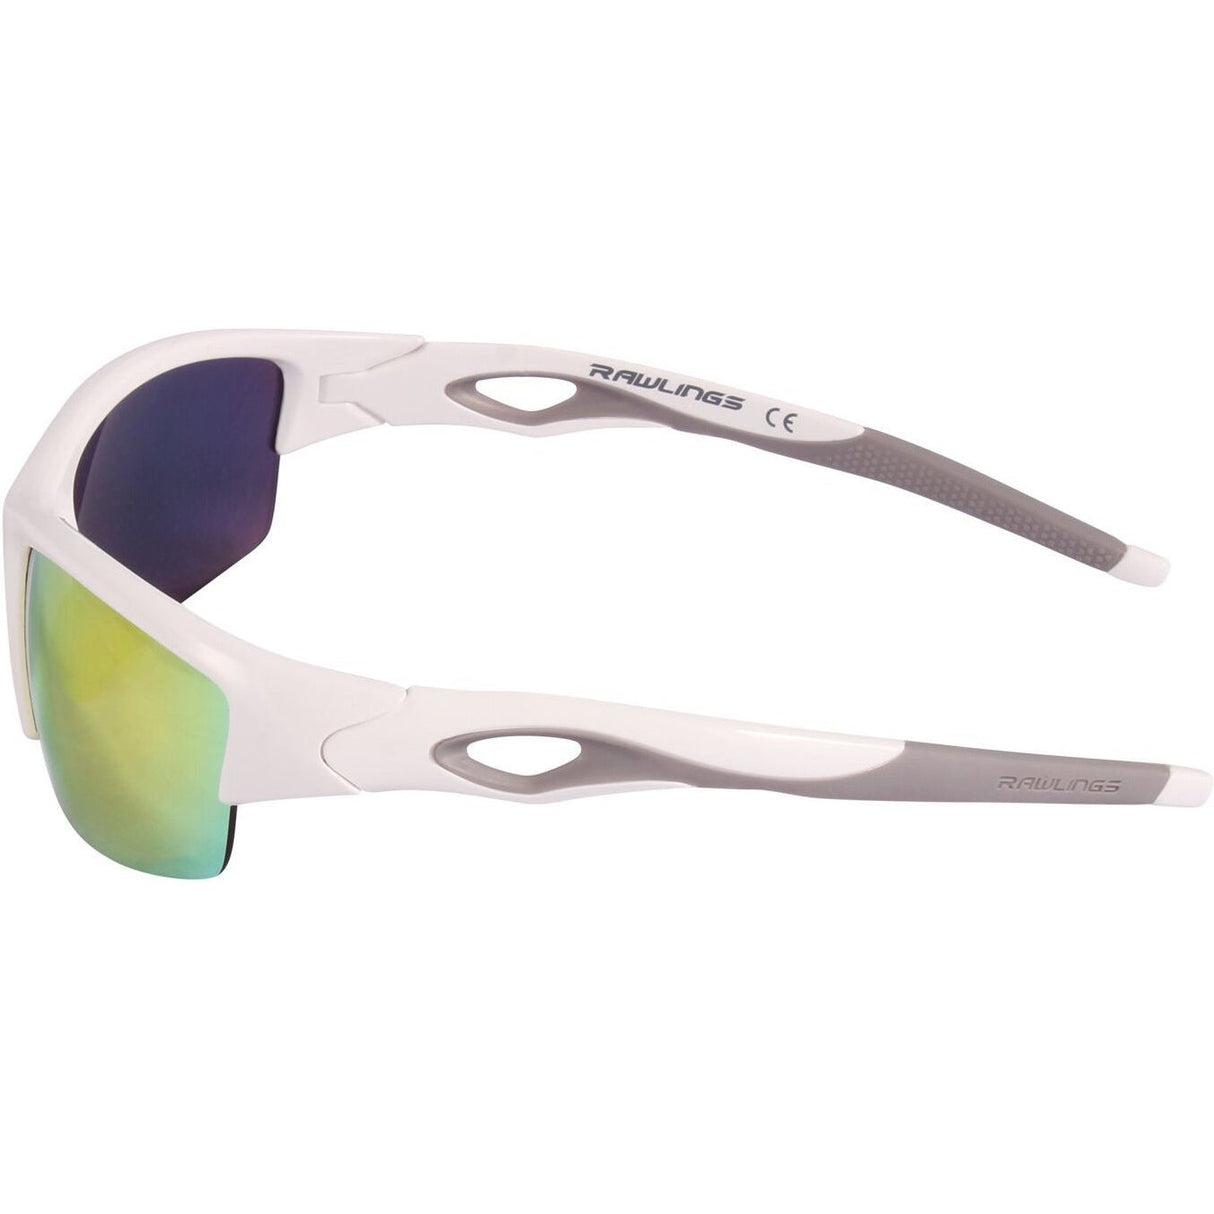 RAWLINGS Baseball Sunglasses, Light, Sport Stylish Shield Lens, 100% U –  Guardian Baseball